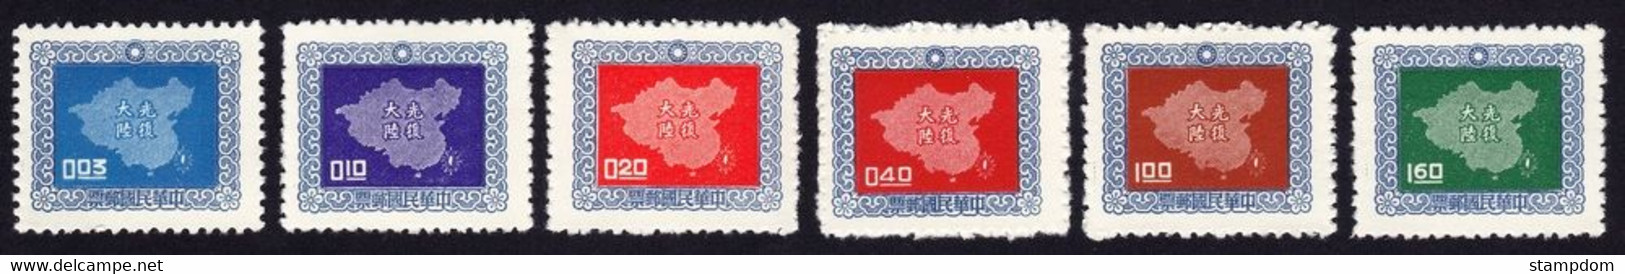 CHINA ROC 1957 Map Of China Sc#1177-1182 MNH @S4643 - Ongebruikt